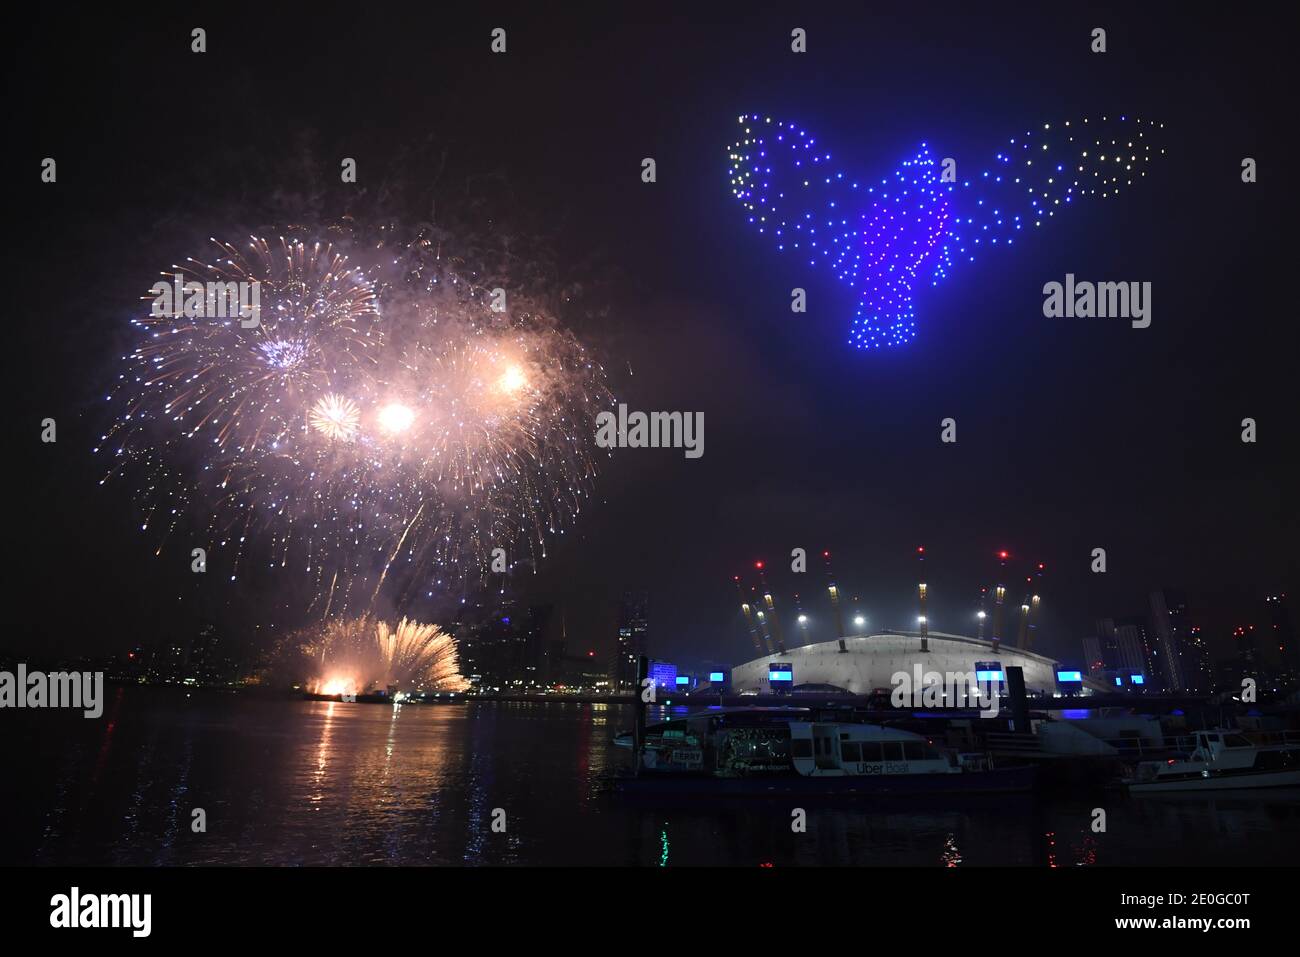 Feuerwerke und Drohnen beleuchten den Nachthimmel über London, da sie eine Lichtvorschau bilden, da Londons normales Silvesterfeuerwerk wegen der Coronavirus-Pandemie abgesagt wurde. Stockfoto